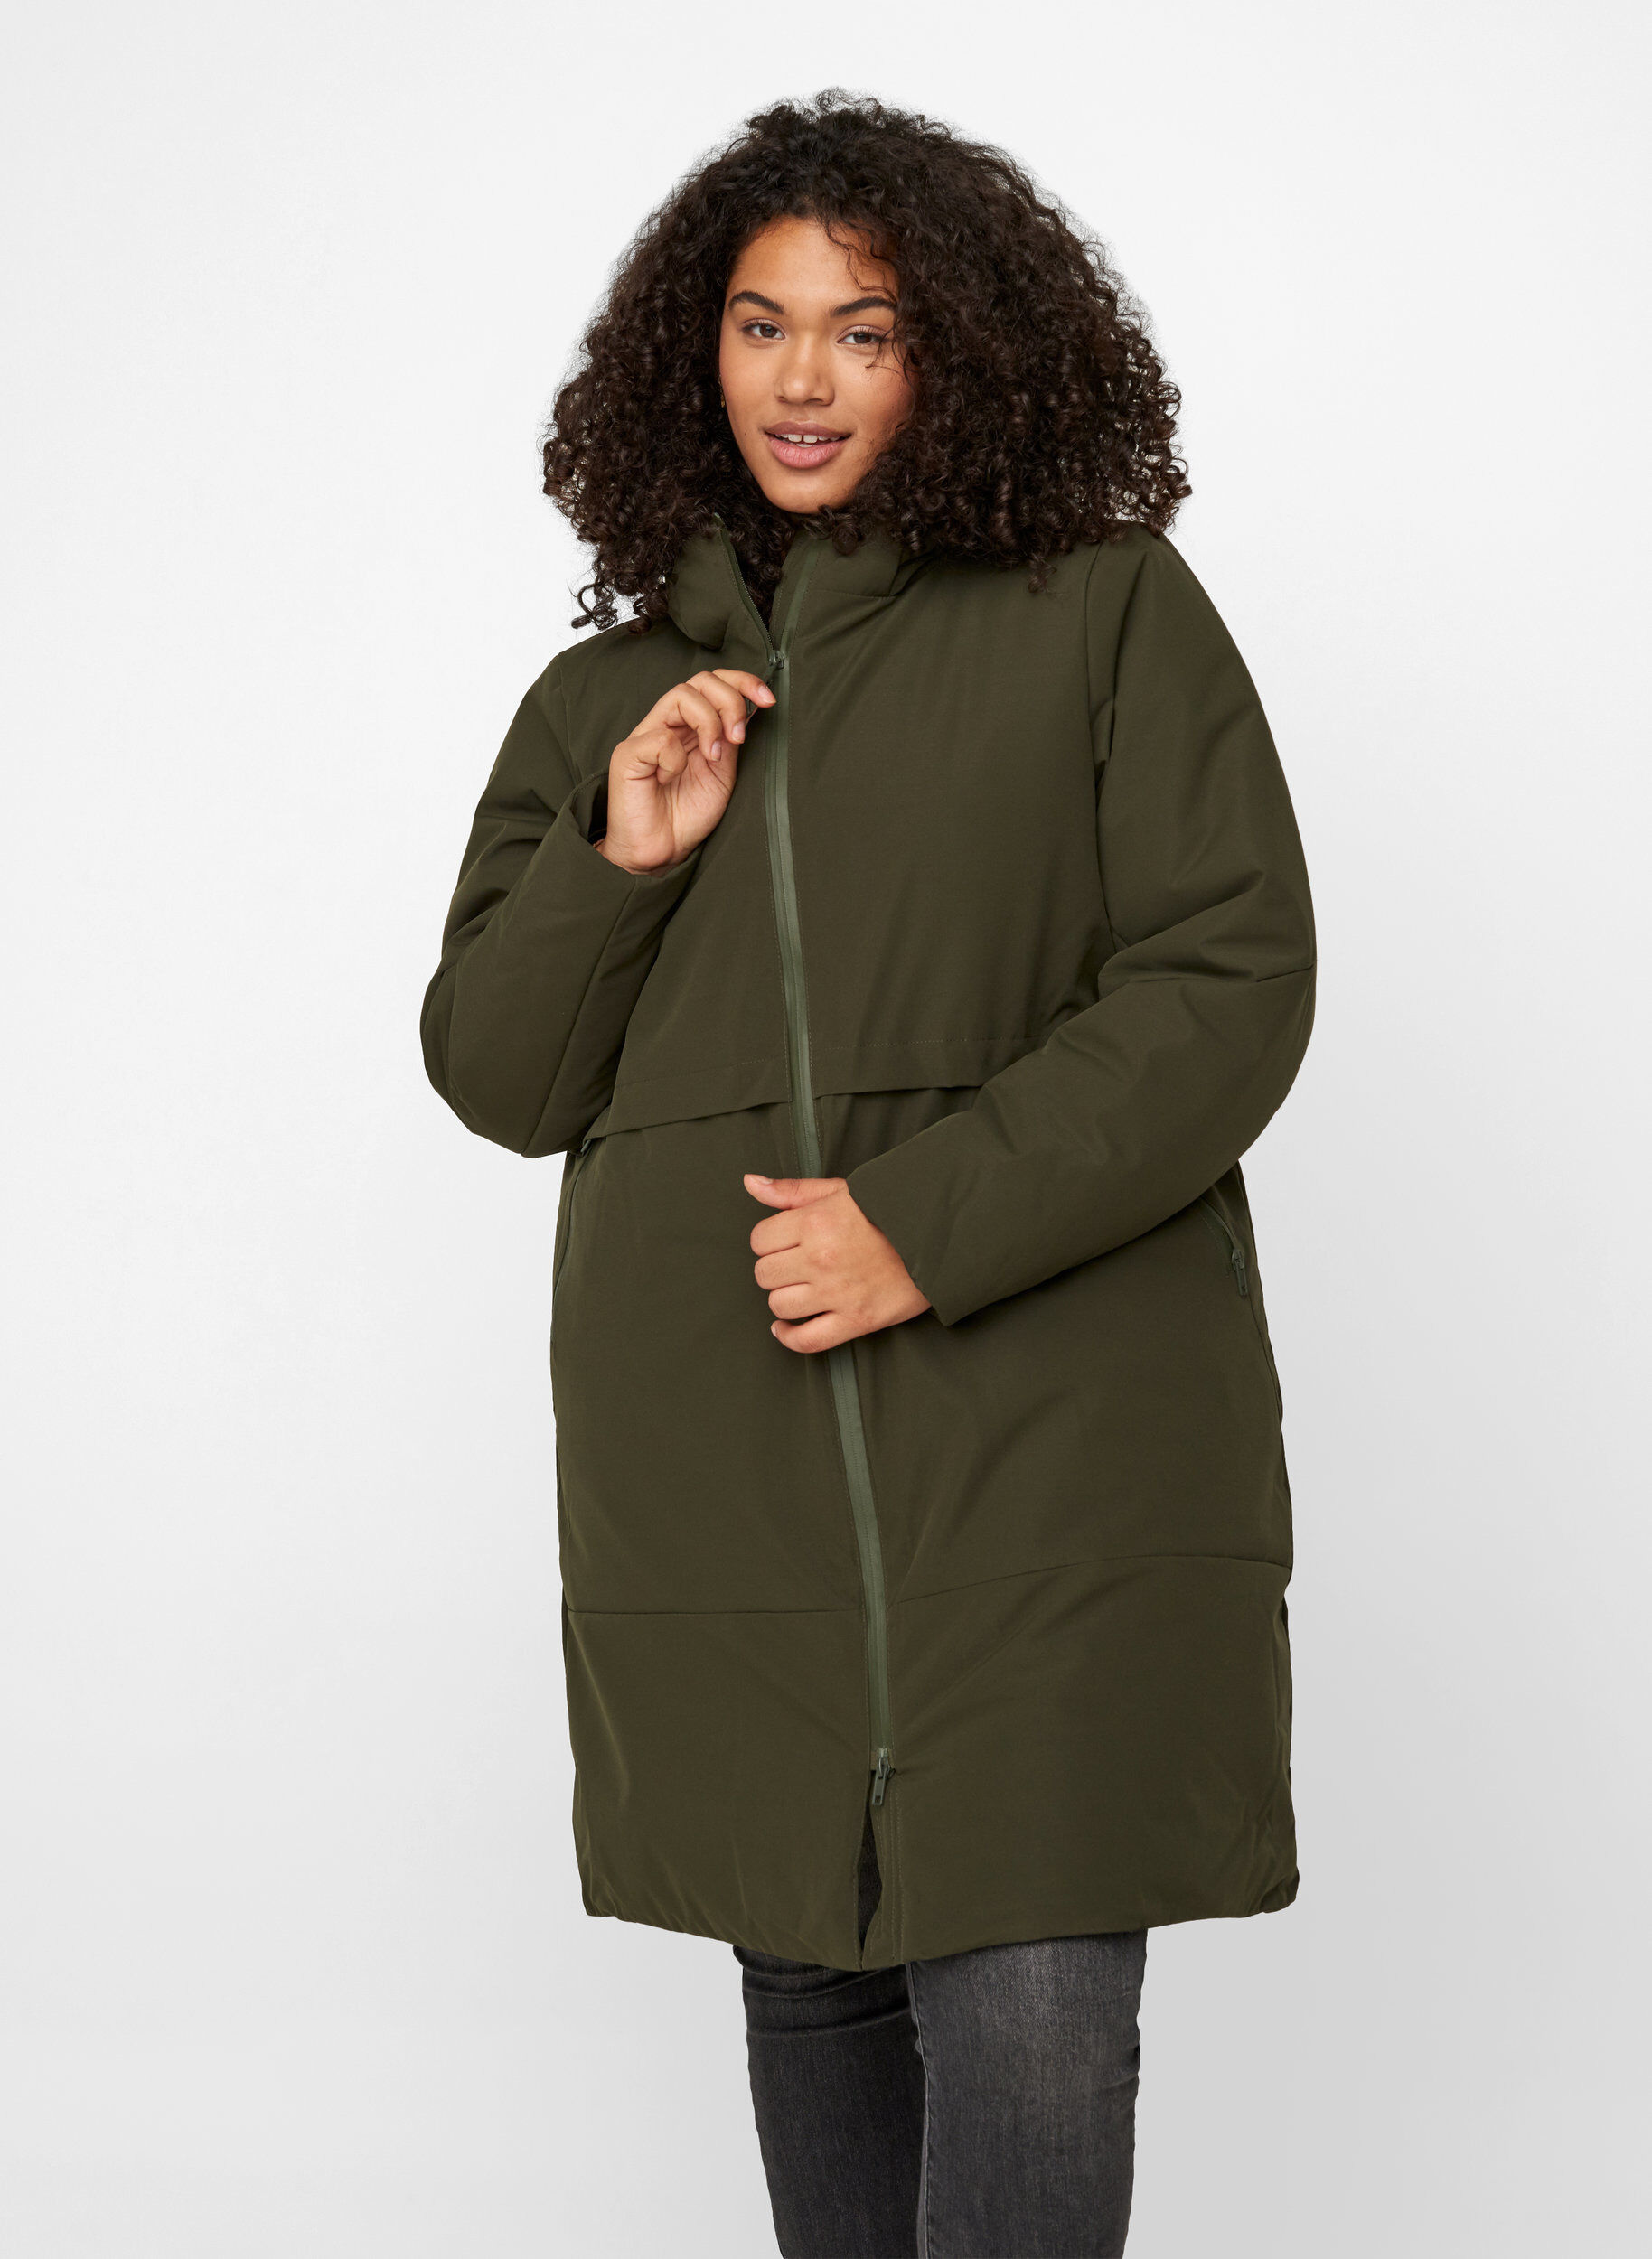 Womens Plus Size Coats,LuluZanm Sales Ladies Winter Warm Hooded Fleece Outerwear Casual Long Sleeve Jackets 